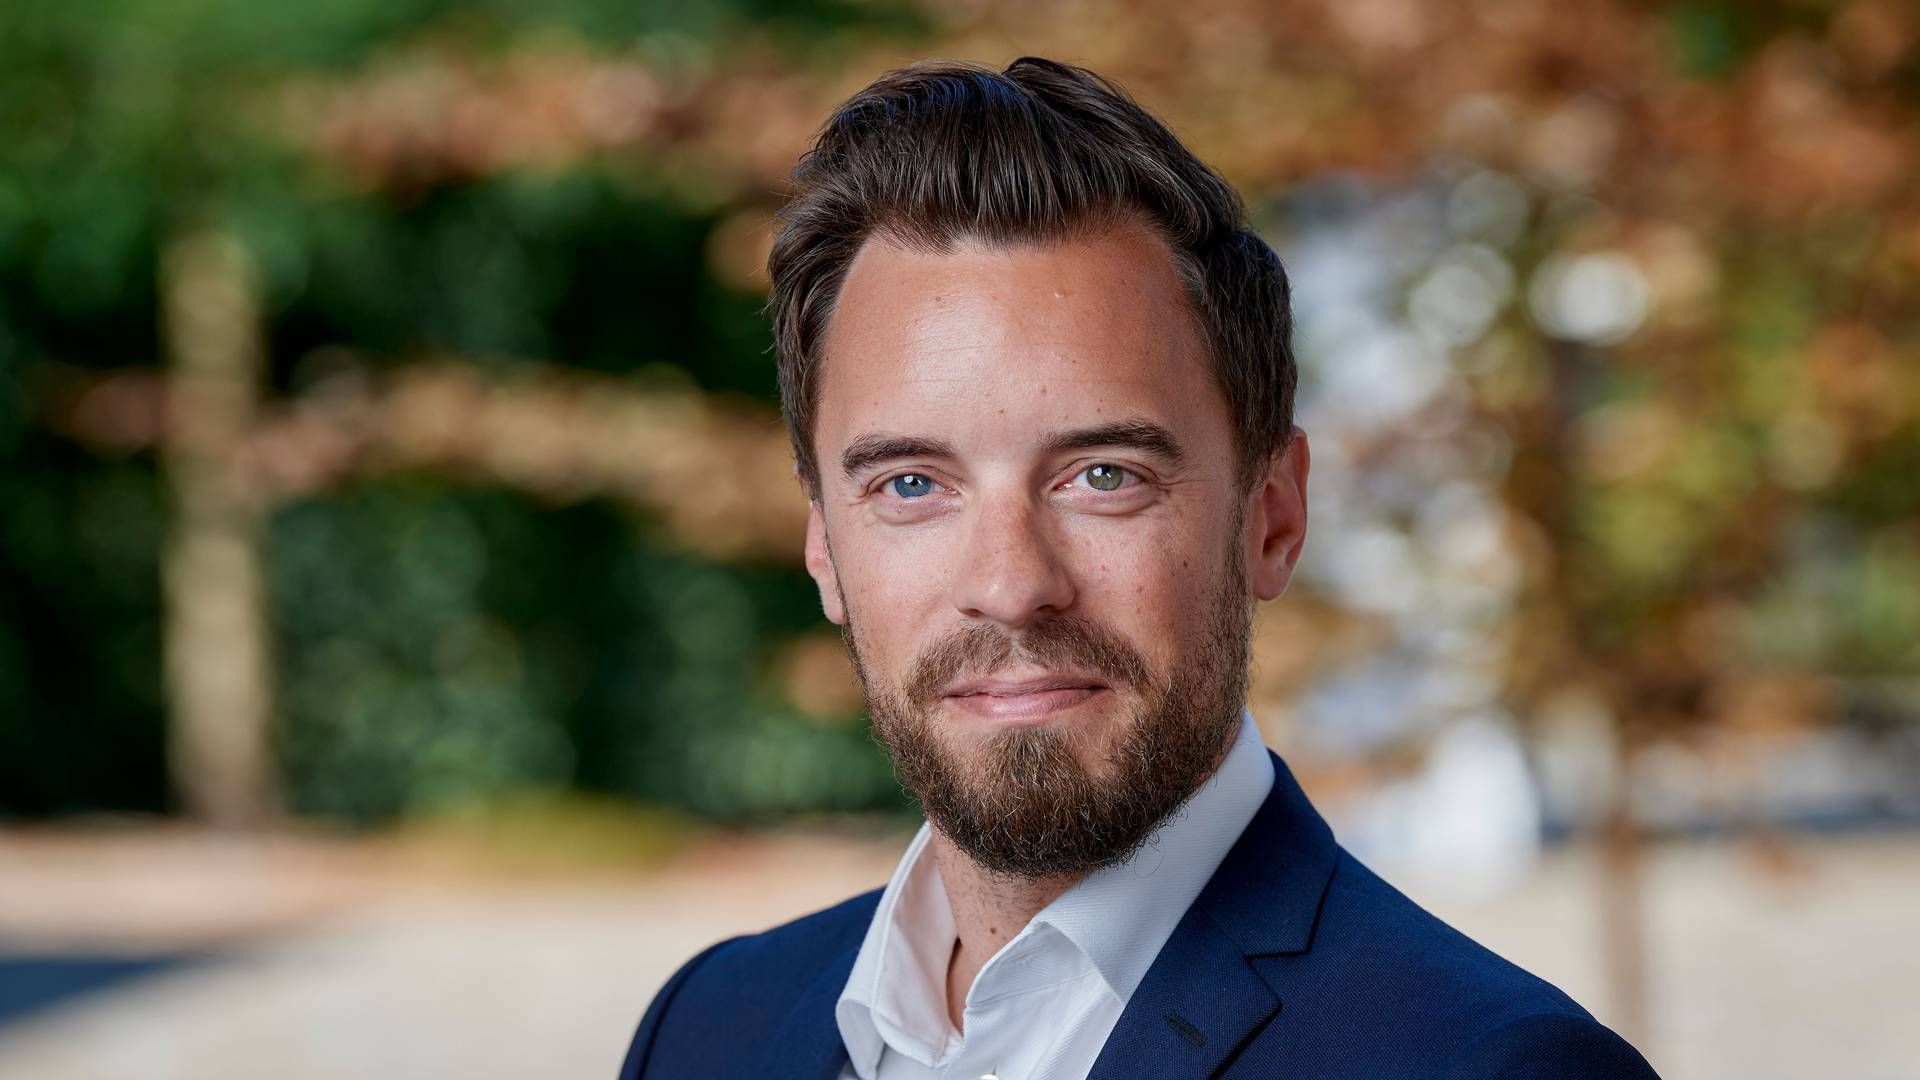 Investeringsdirektør Jakob Traumer har tidligere arbejdet hos bl.a. ATP, Maj Invest og Bain & Company. | Foto: J. Lauritzen, Carsten Lundager